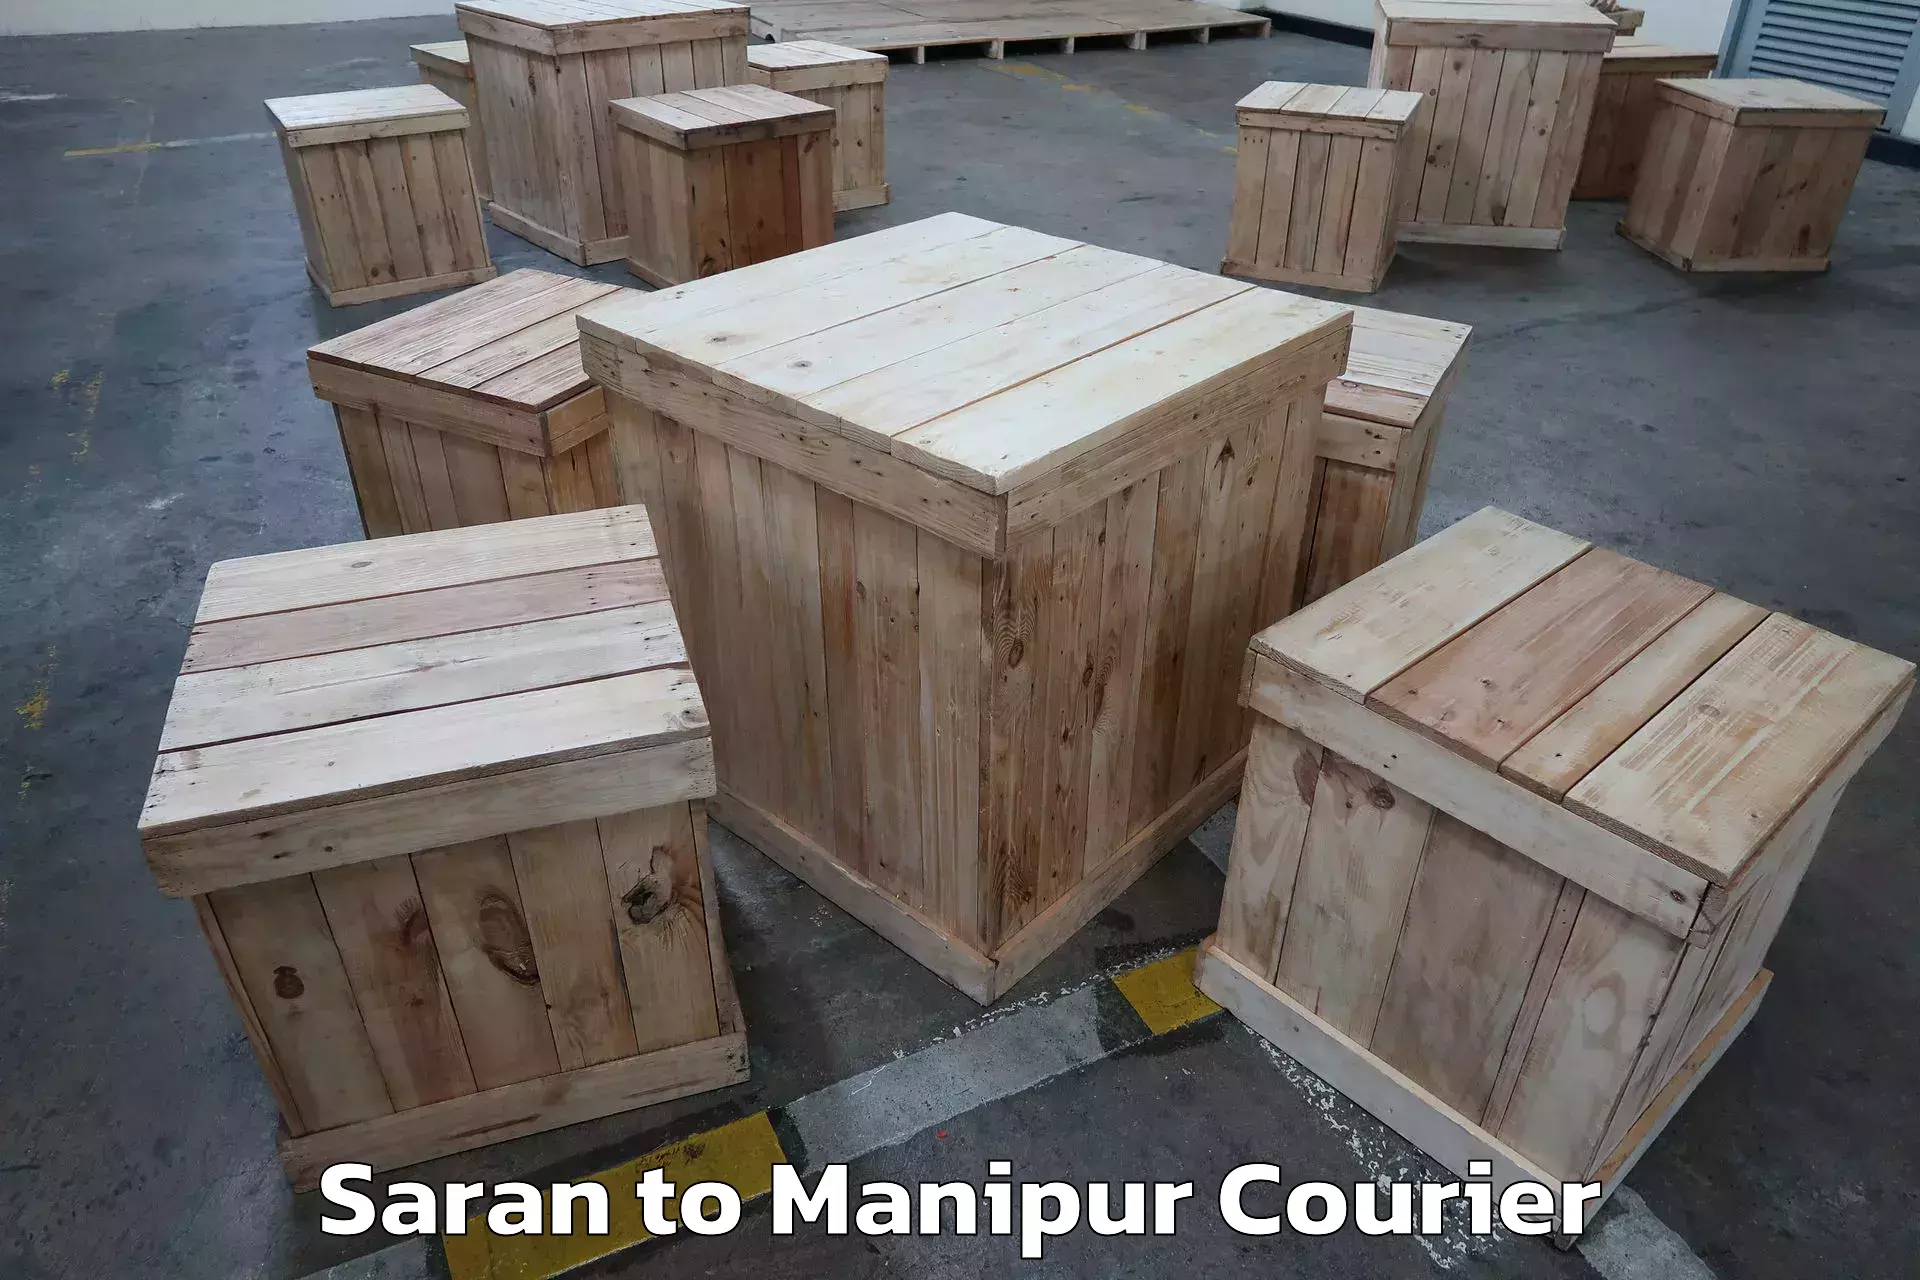 Furniture moving experts Saran to Manipur